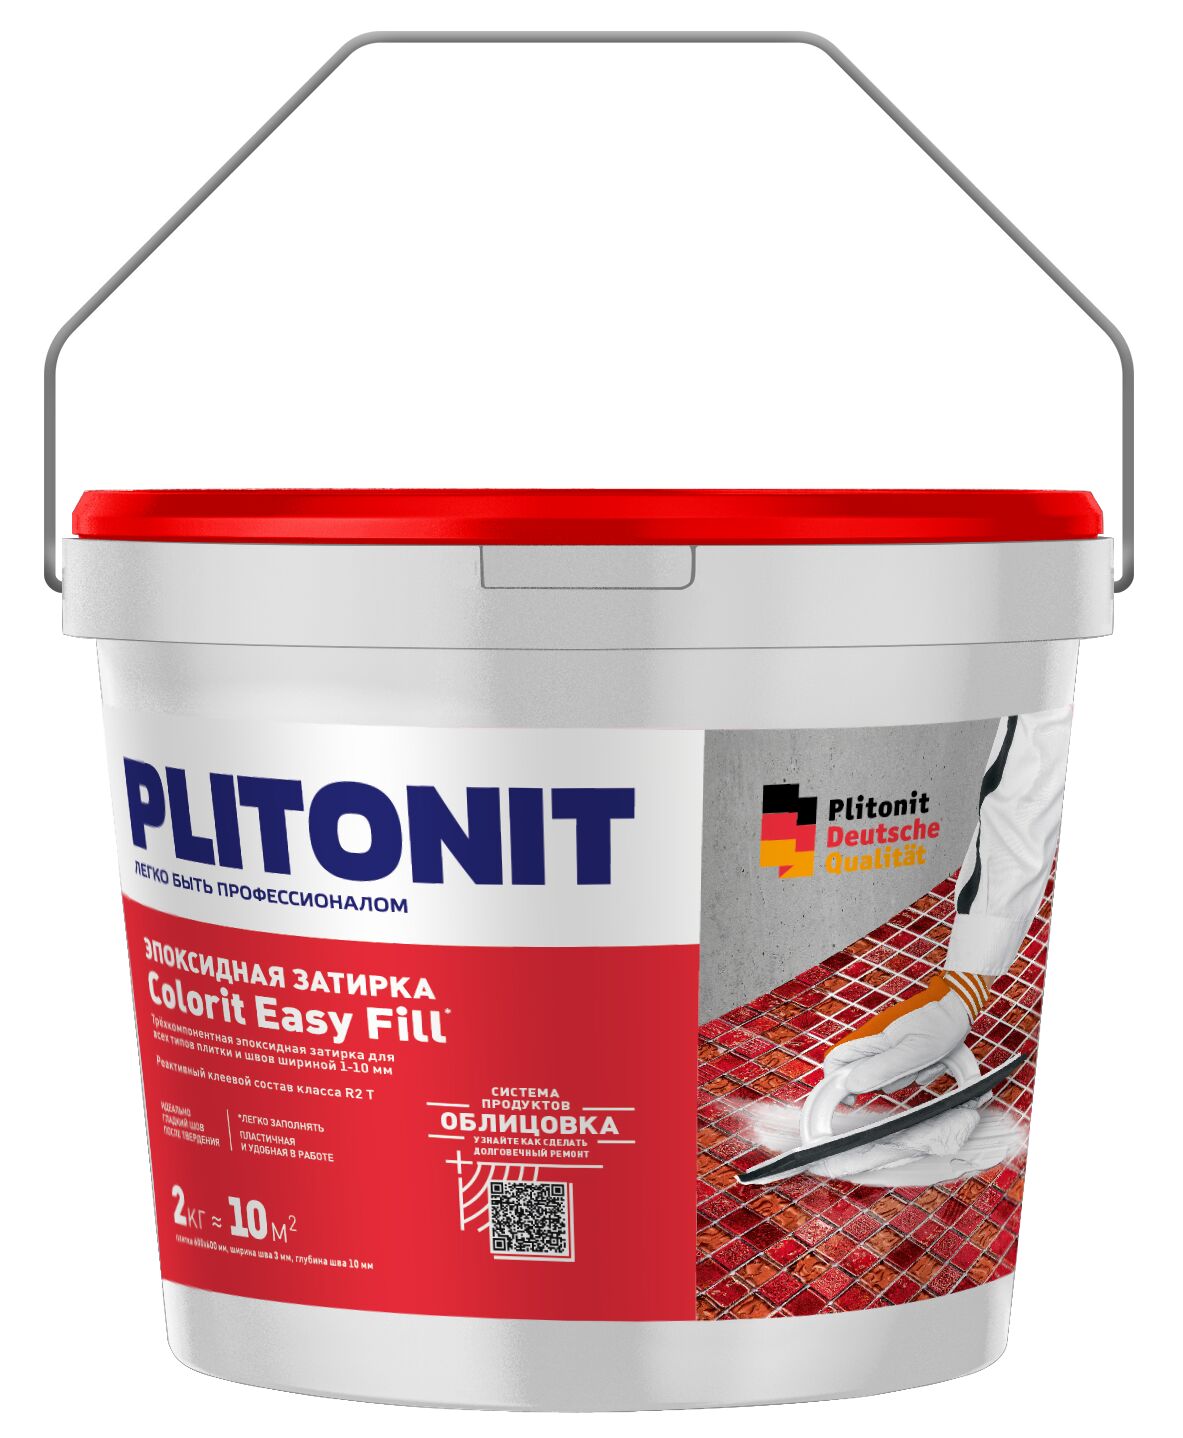 PLITONIT Colorit EasyFill ПЕСОЧНО-СЕРЫЙ- 2 эпоксидная затирка для межплиточных швов и реактивный клей для плитки